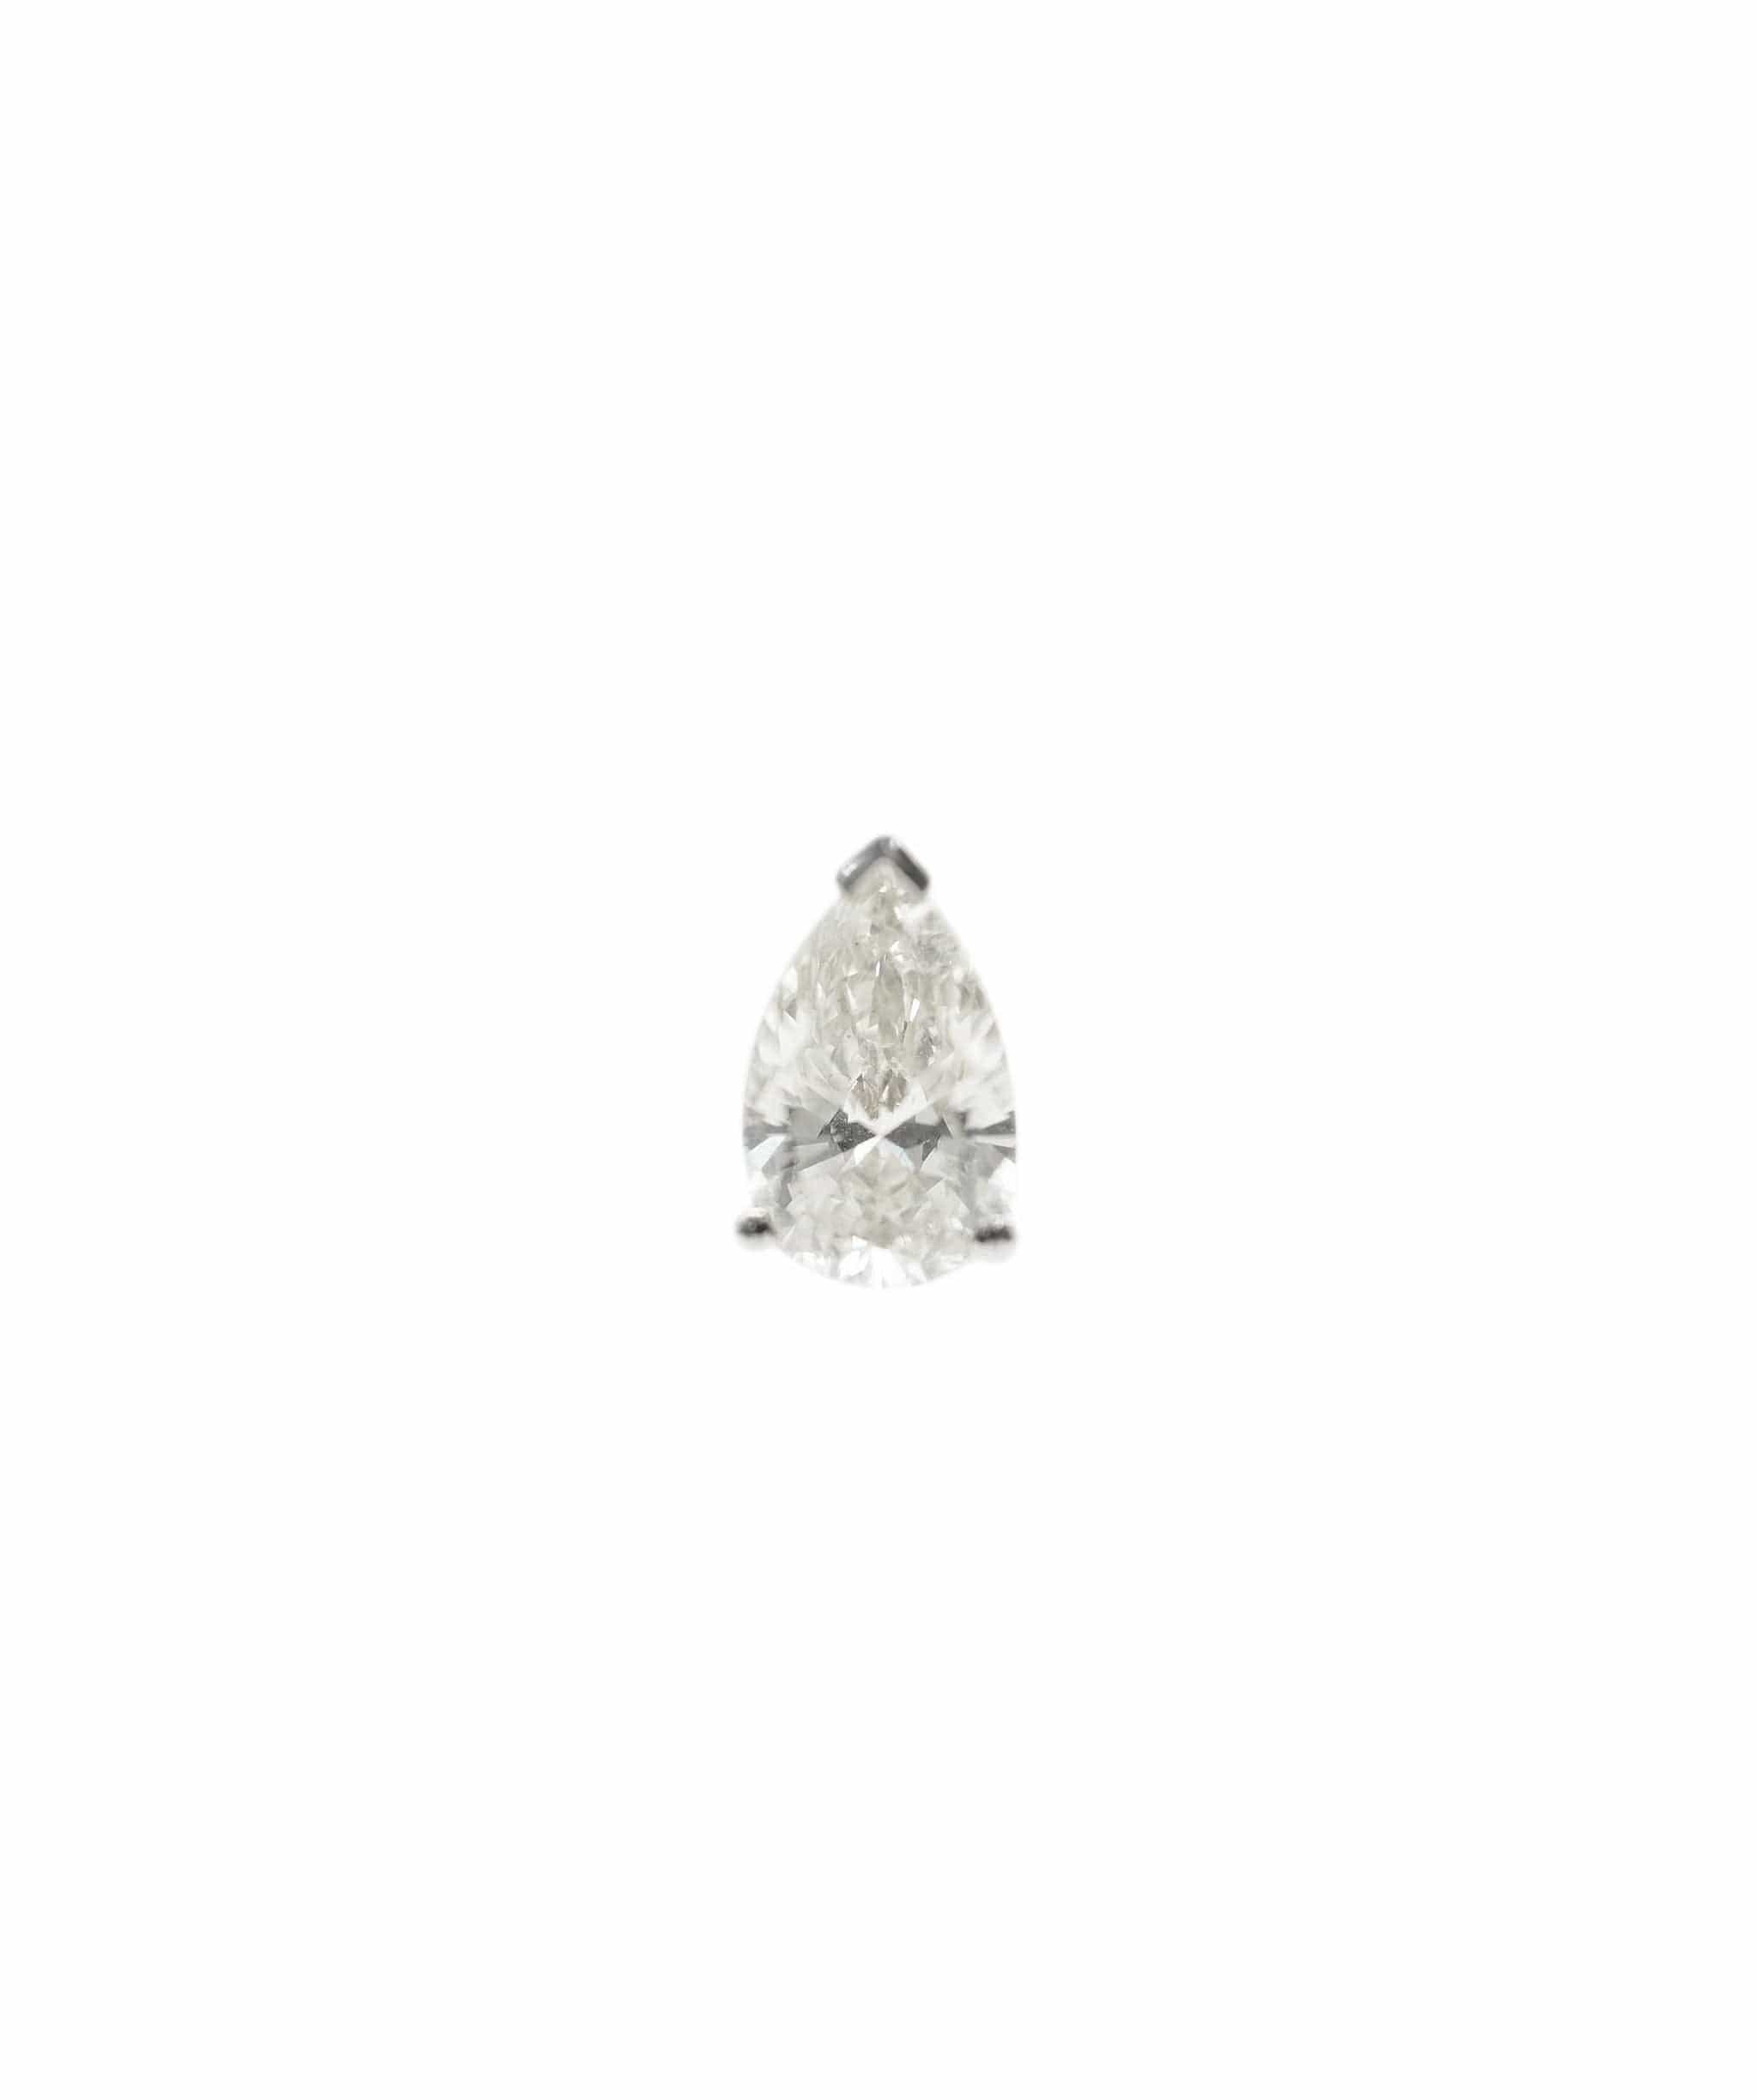 Luxury Promise Martini Earrings WG 1.05 ct P/S JK/VS1 ASC4504